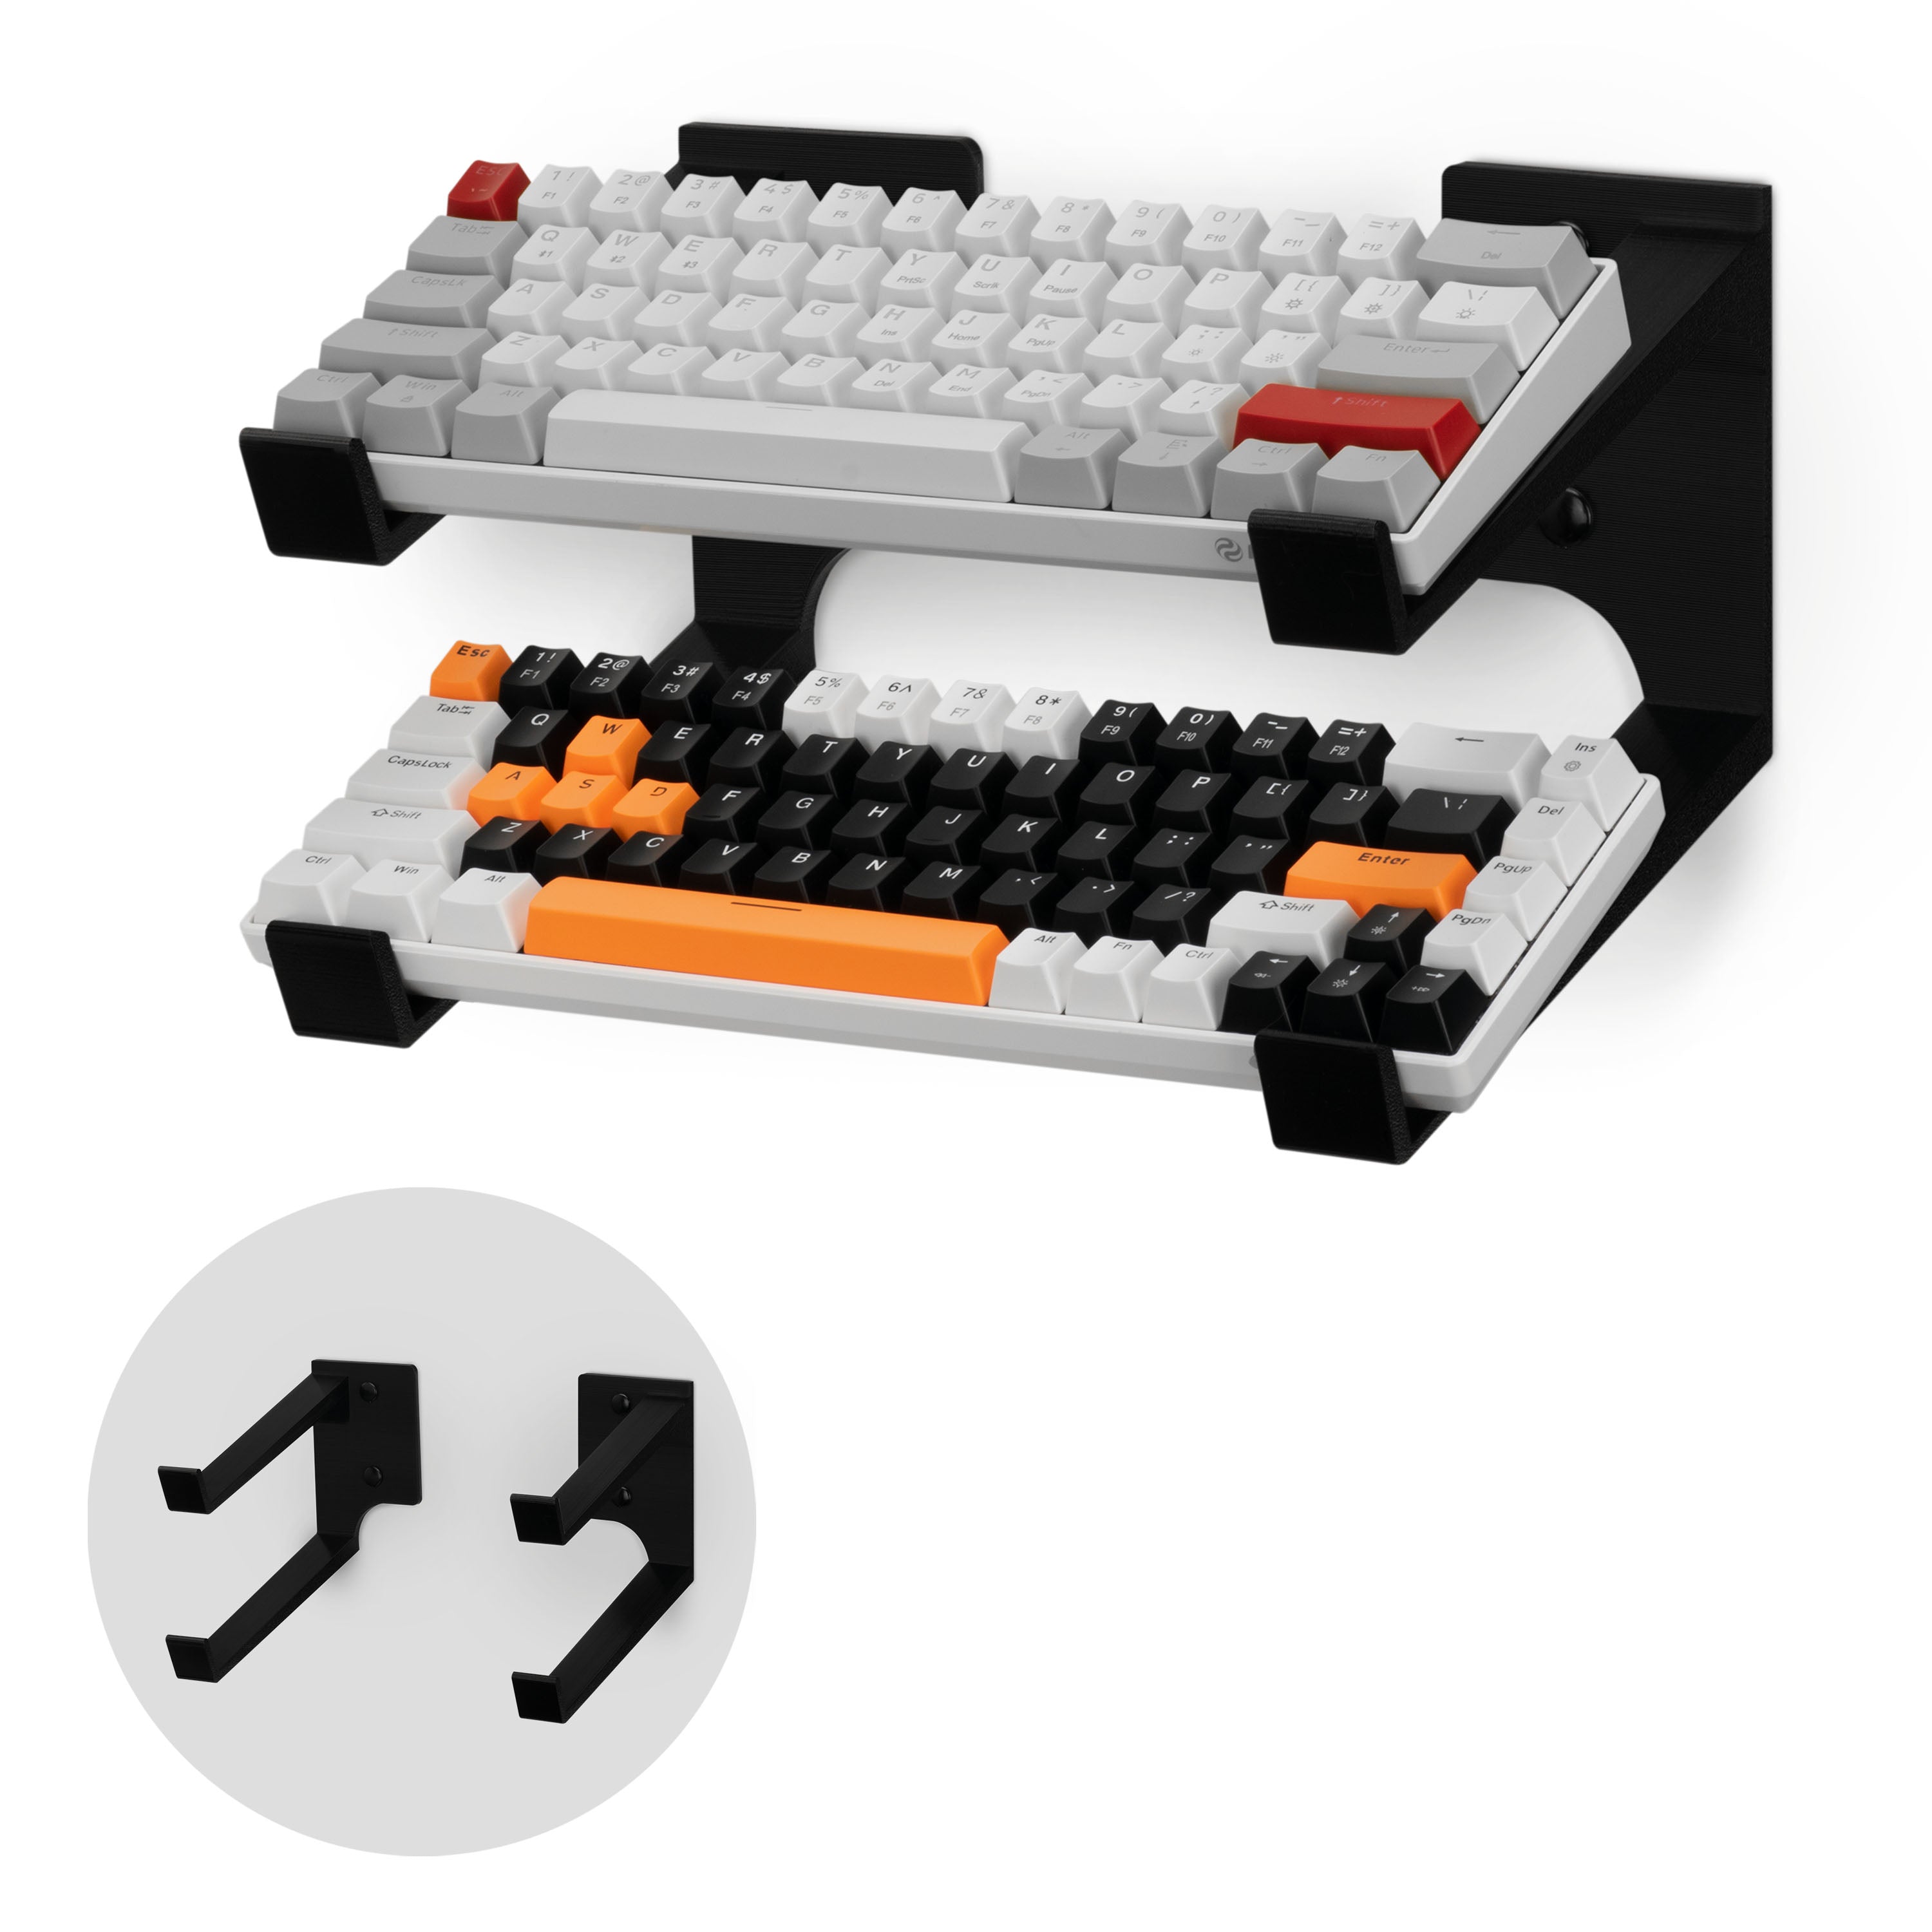 Soporte de teclado para juegos de ordenador, Soporte de teclado